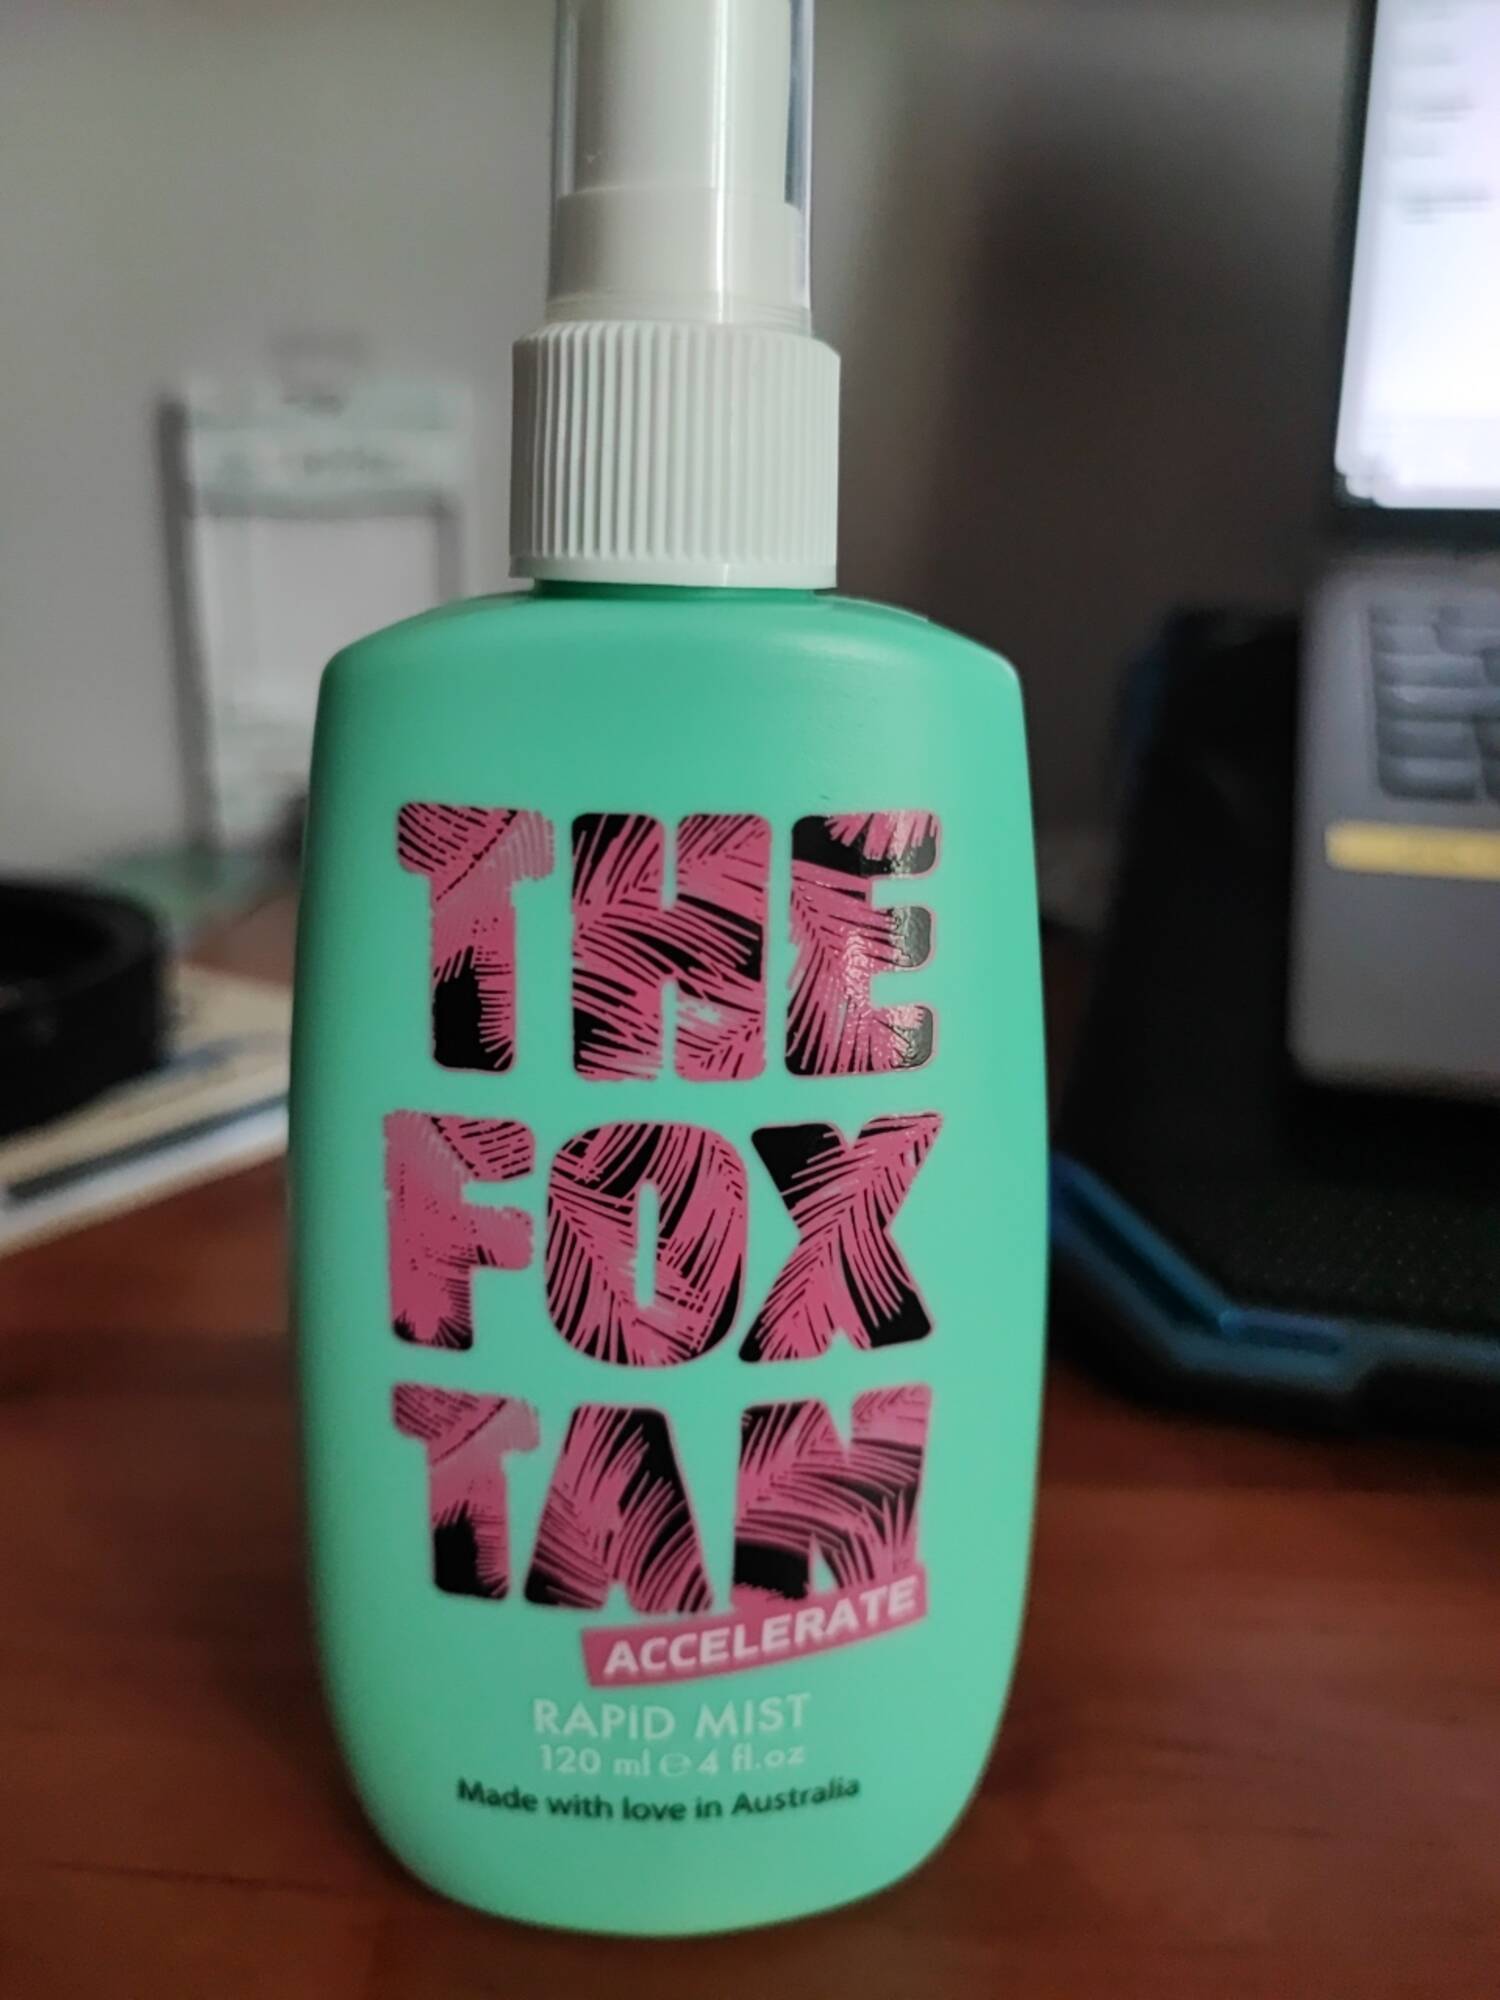 THE FOX TAN - Accelerate - Rapid mist